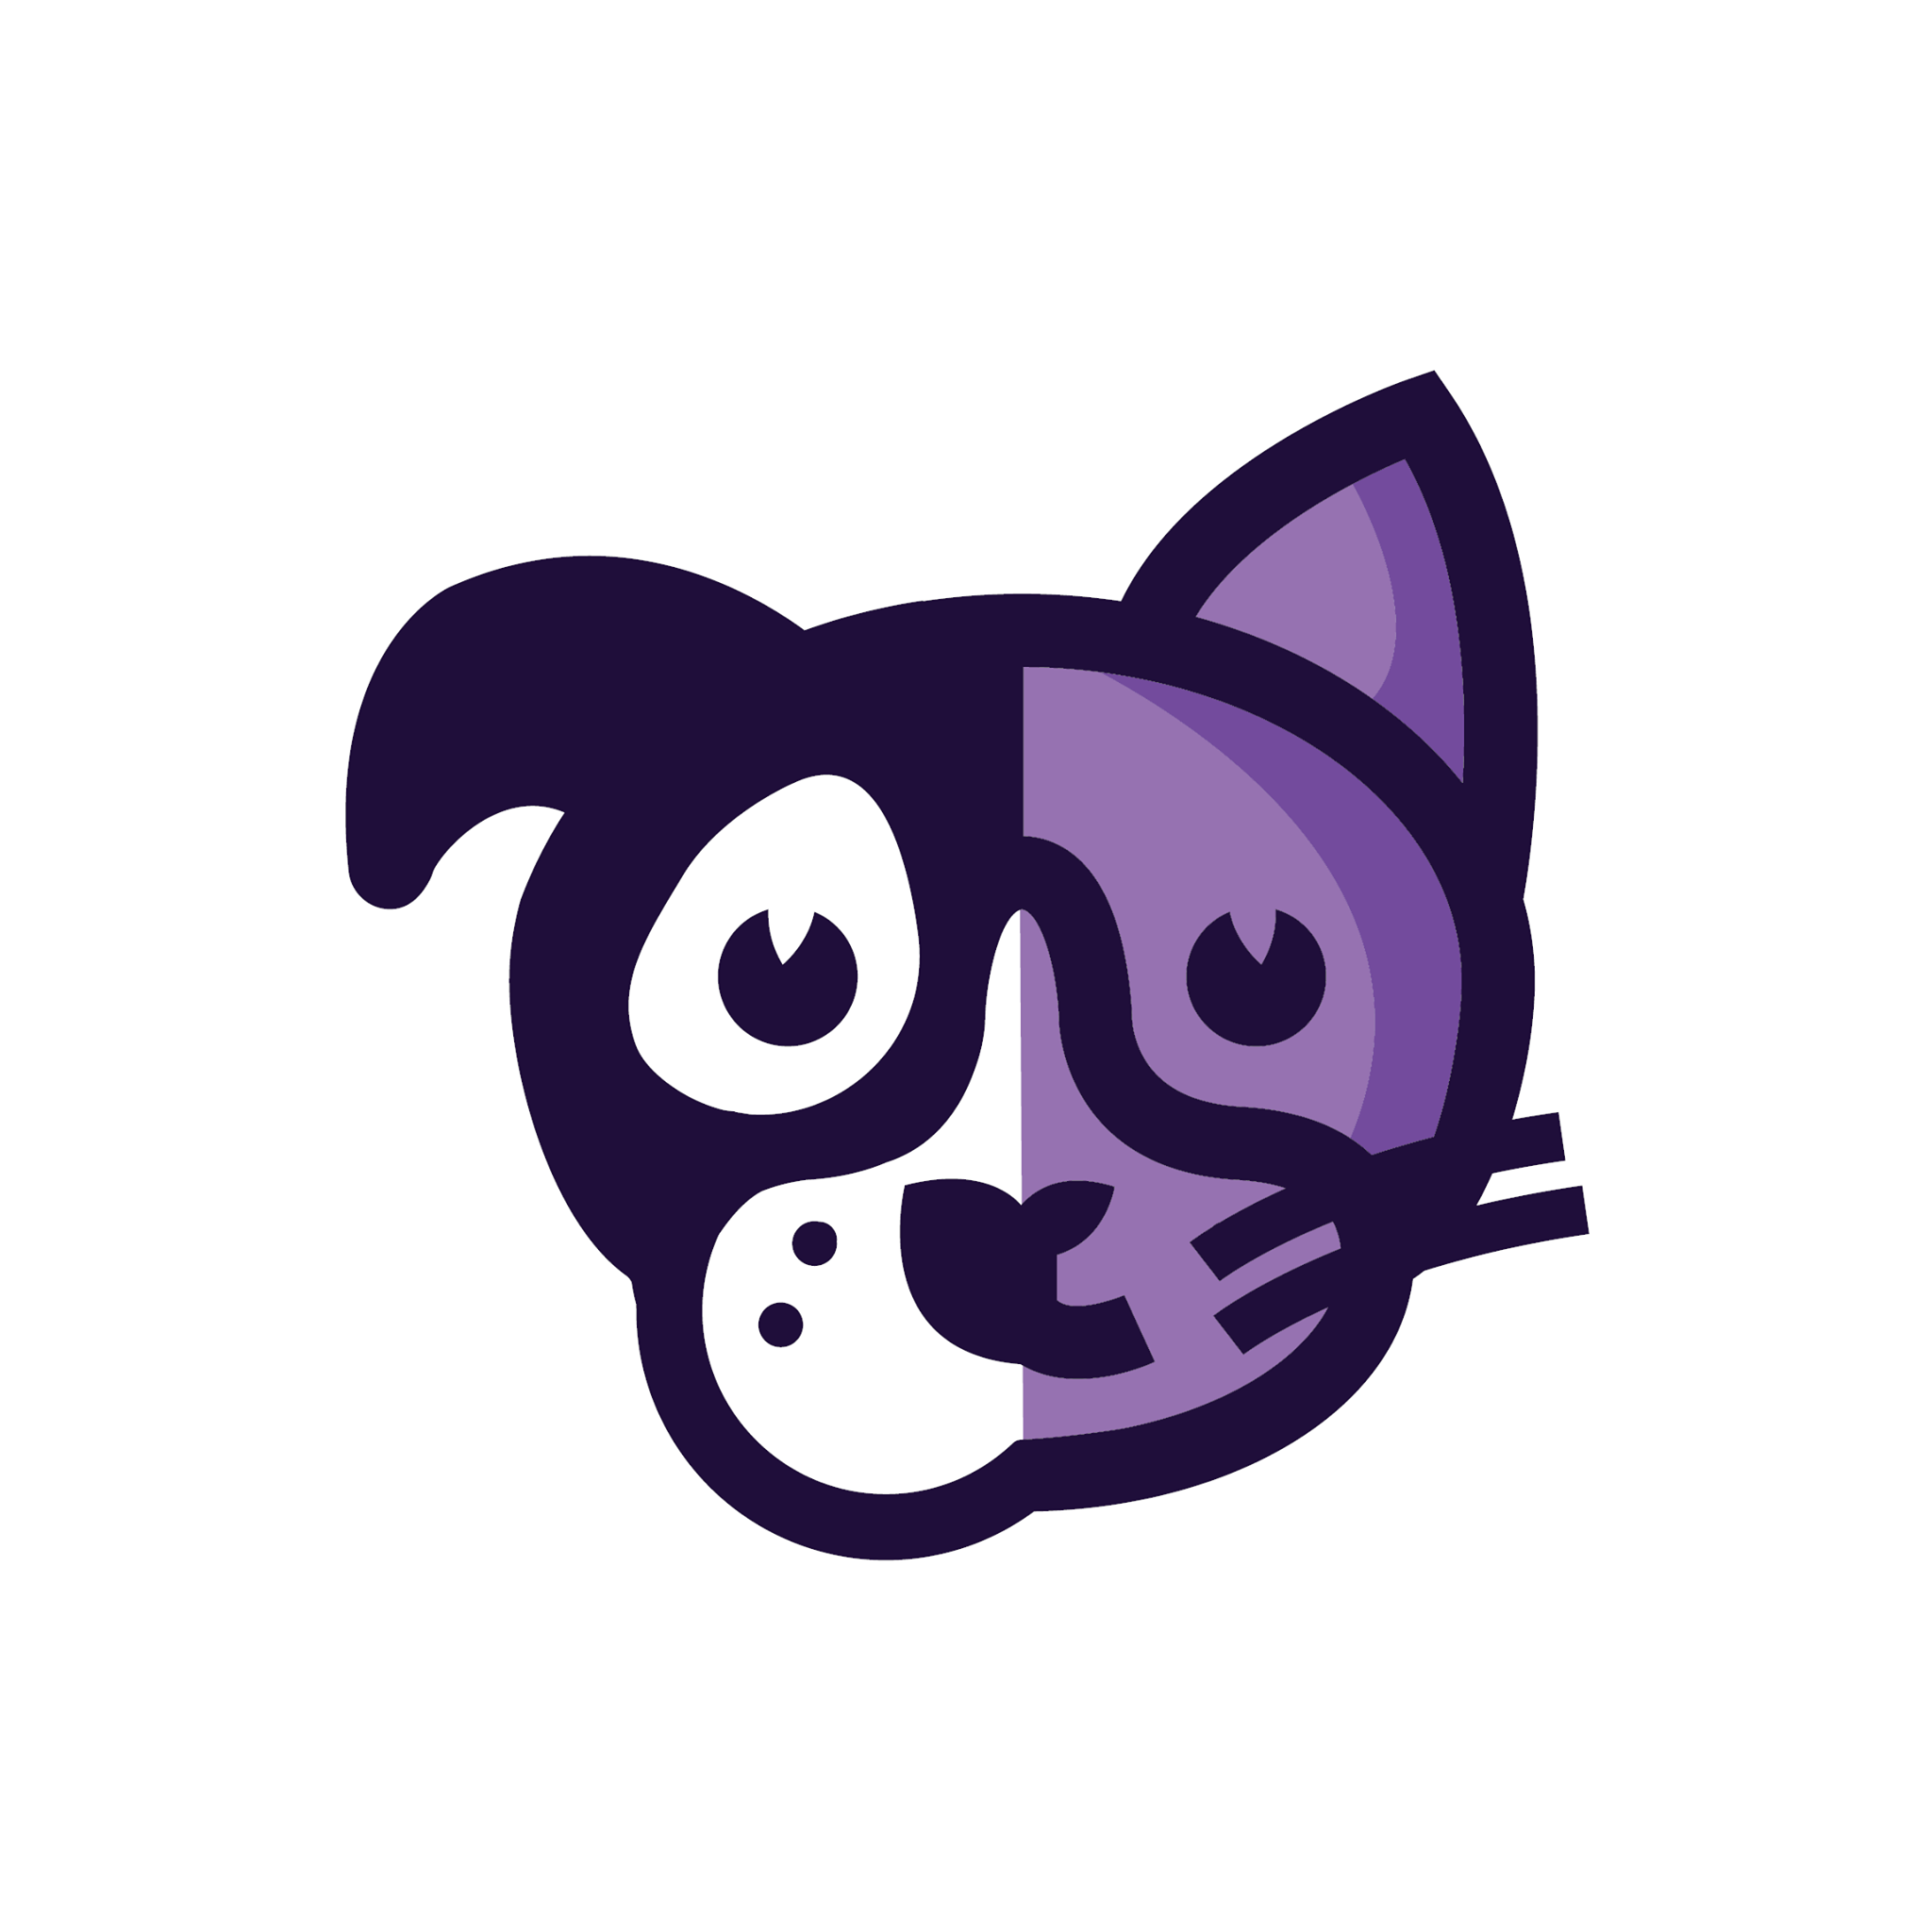 Company logo of Hound & Cat